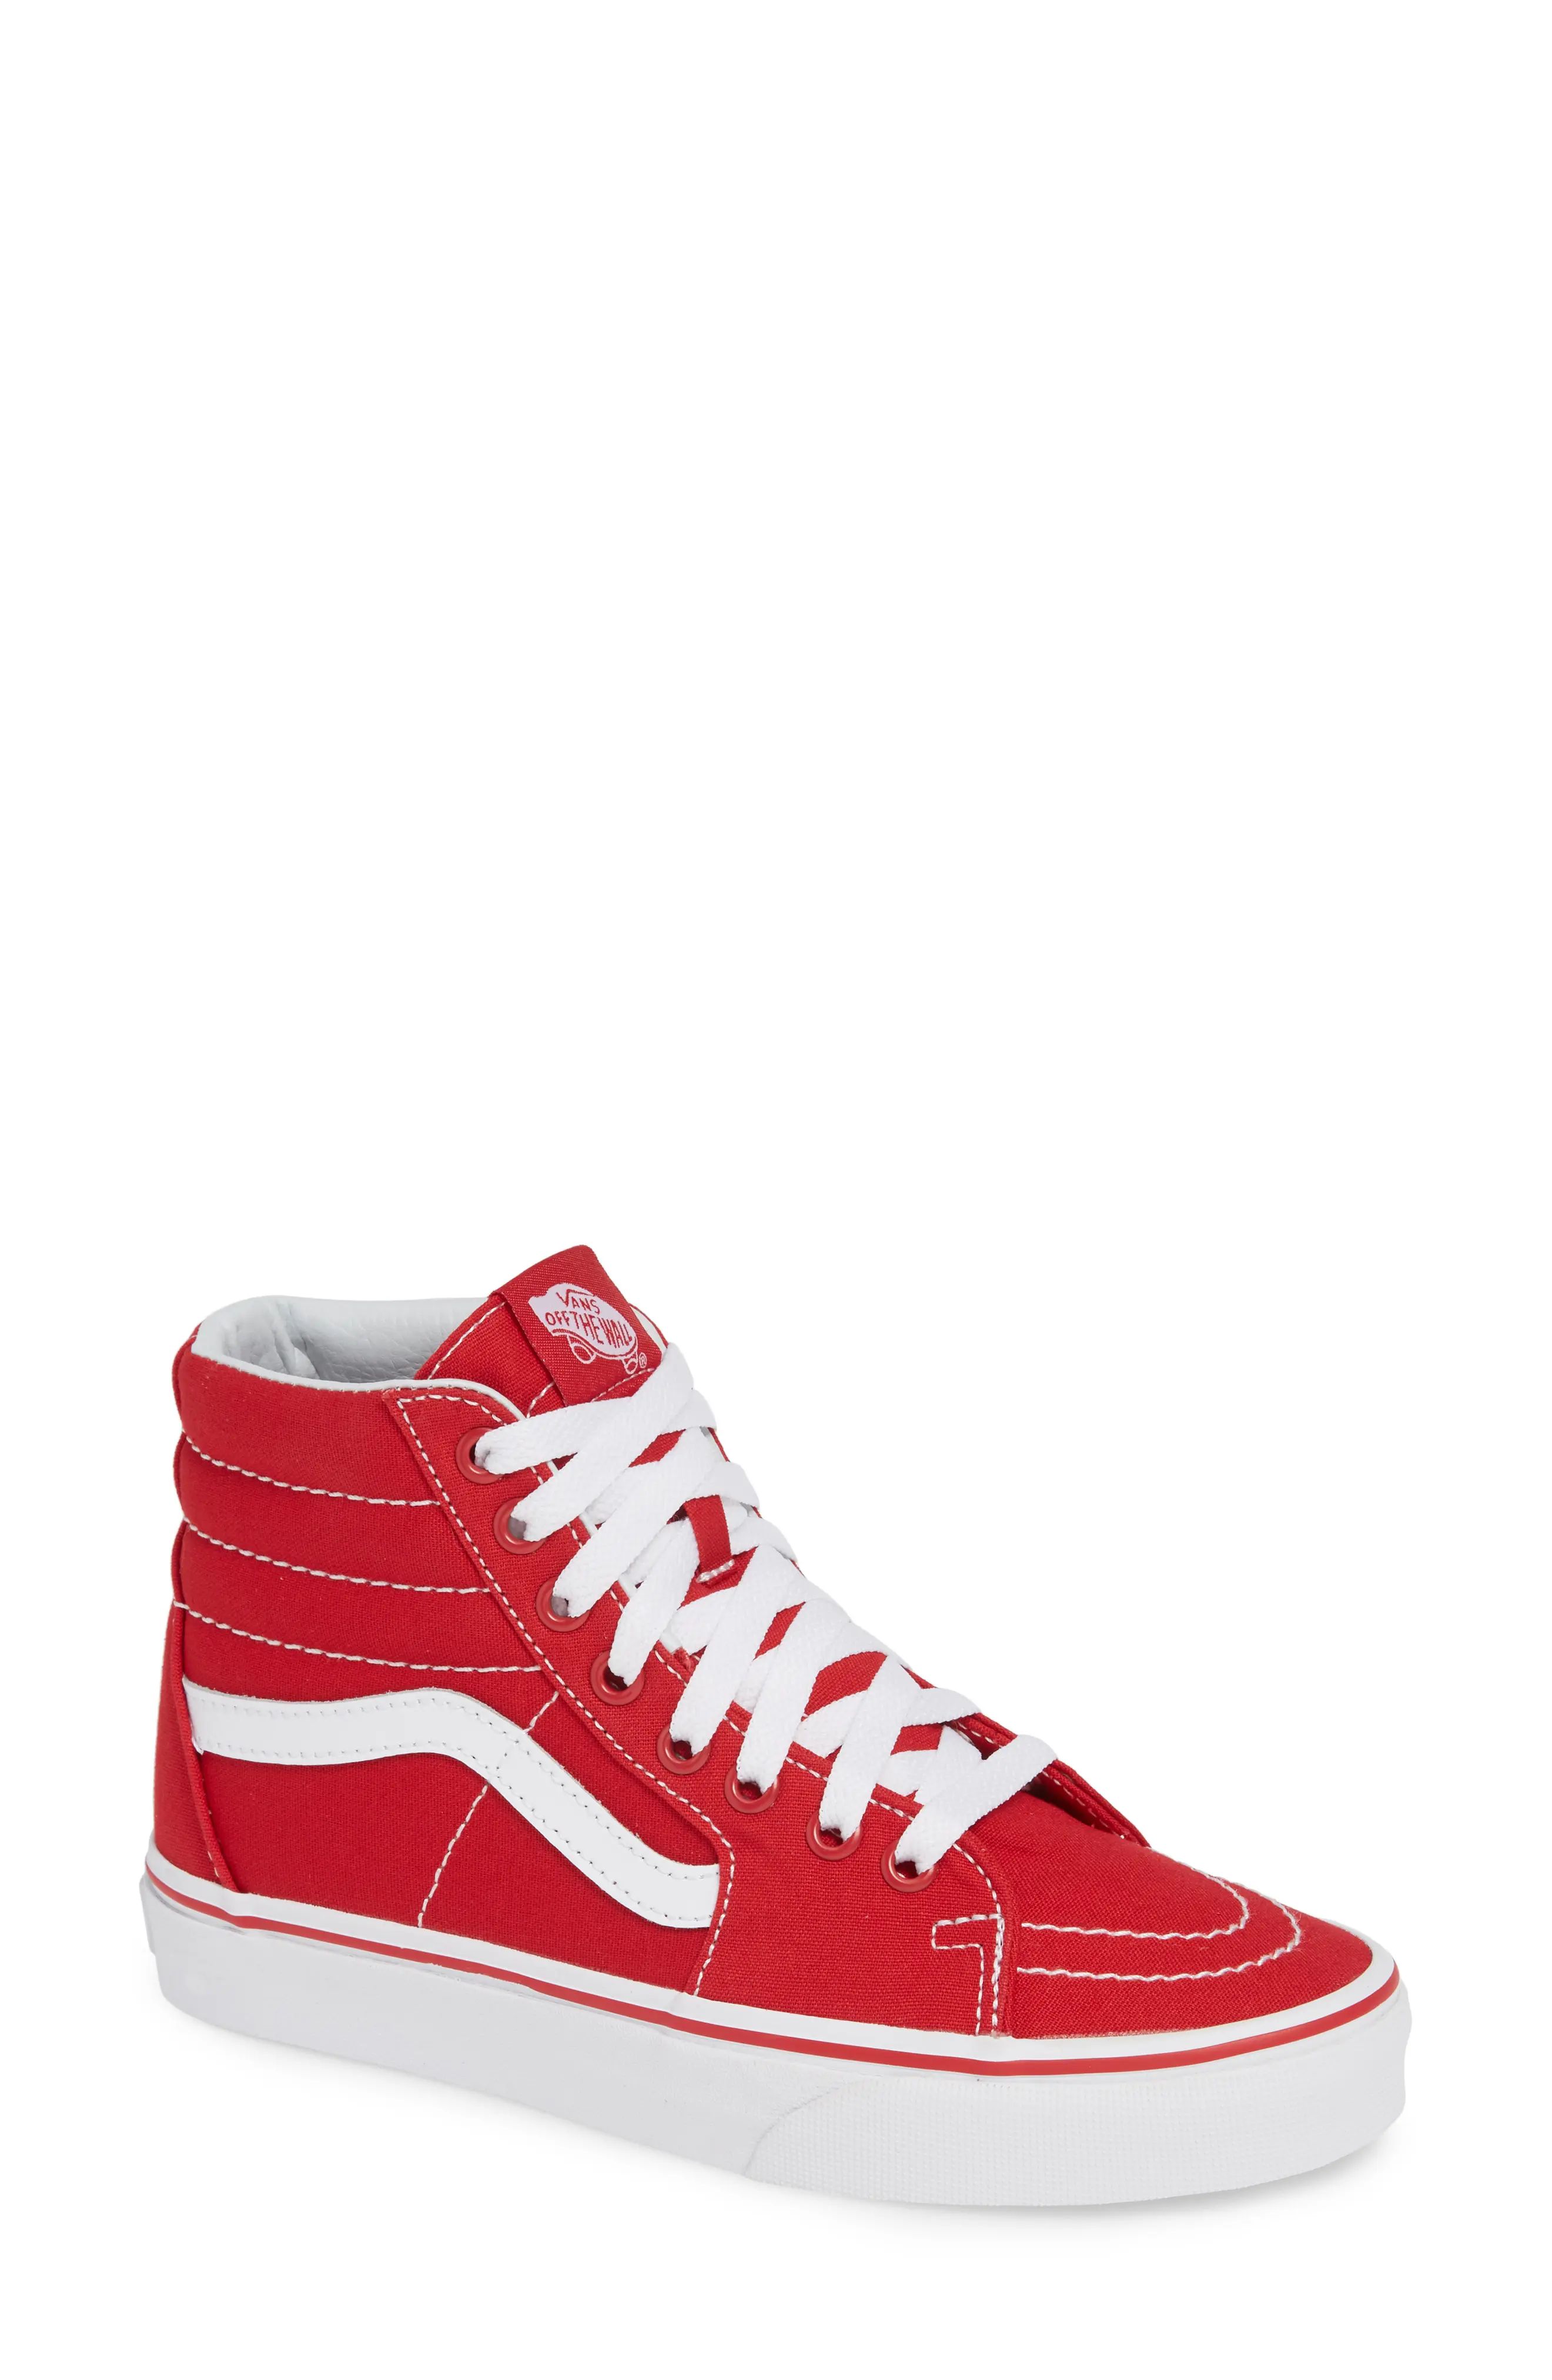 Women's Vans 'Sk8-Hi' Sneaker, Size 5 M - Red | Nordstrom